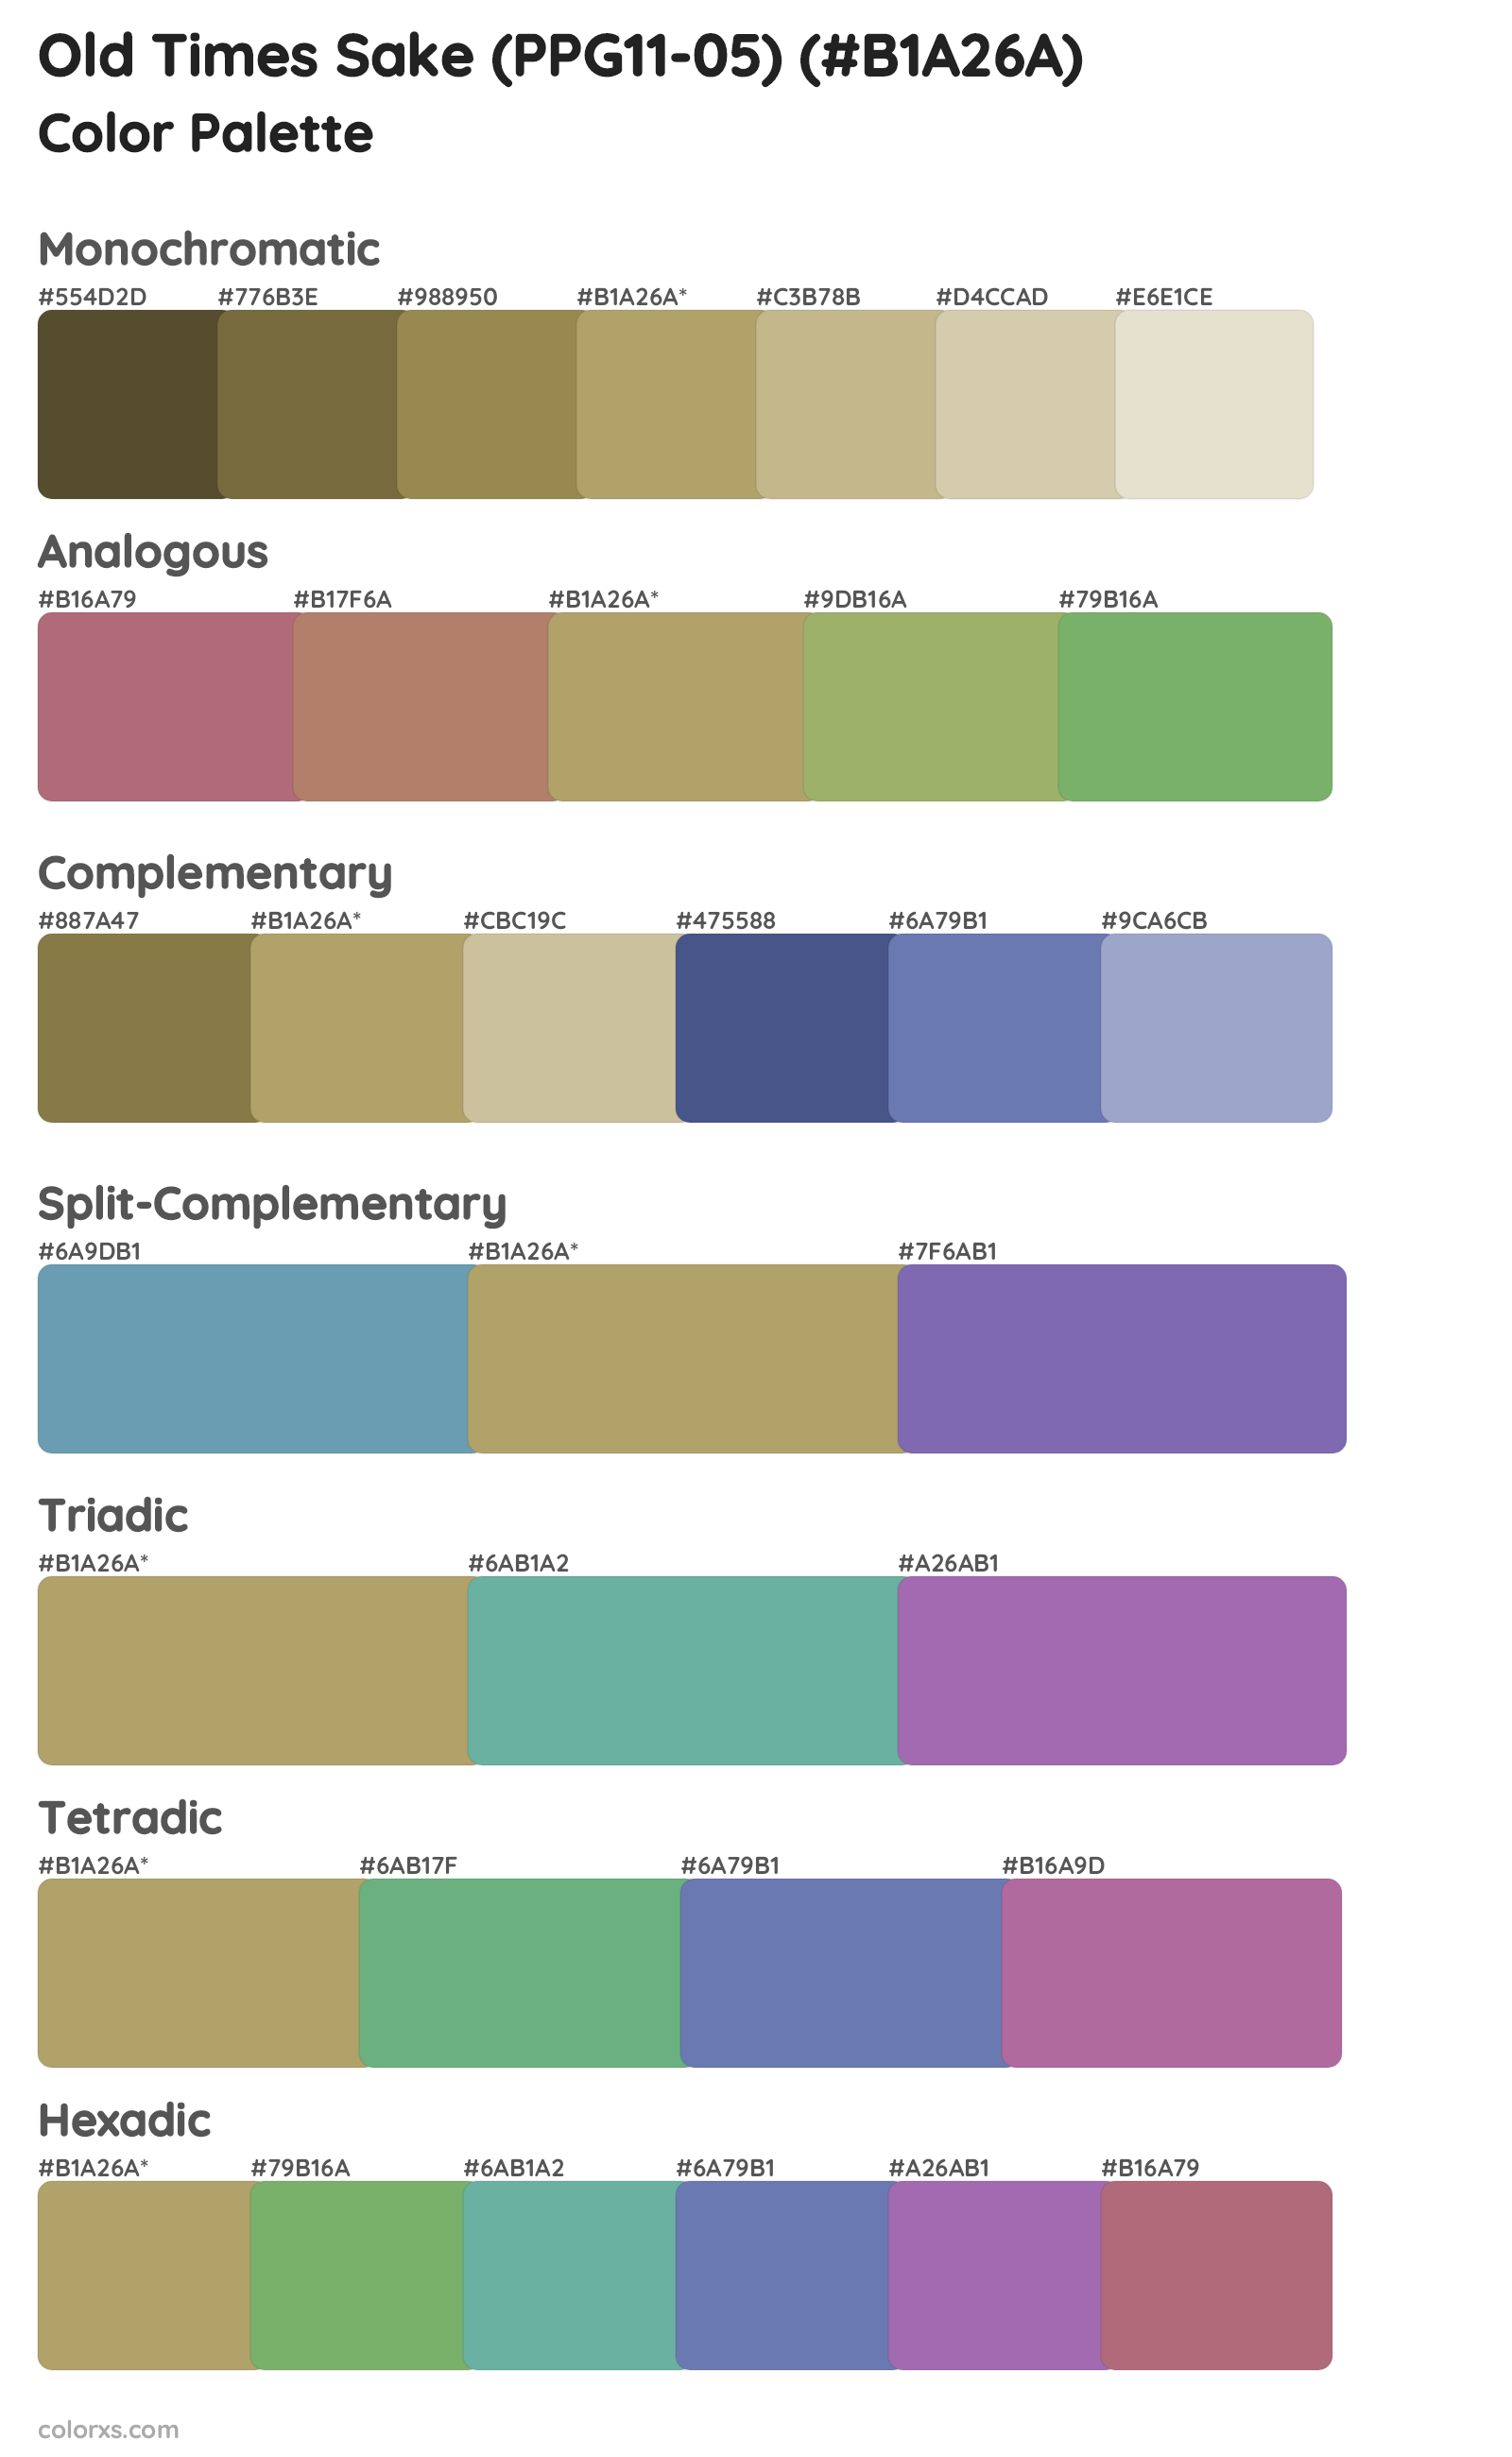 Old Times Sake (PPG11-05) Color Scheme Palettes